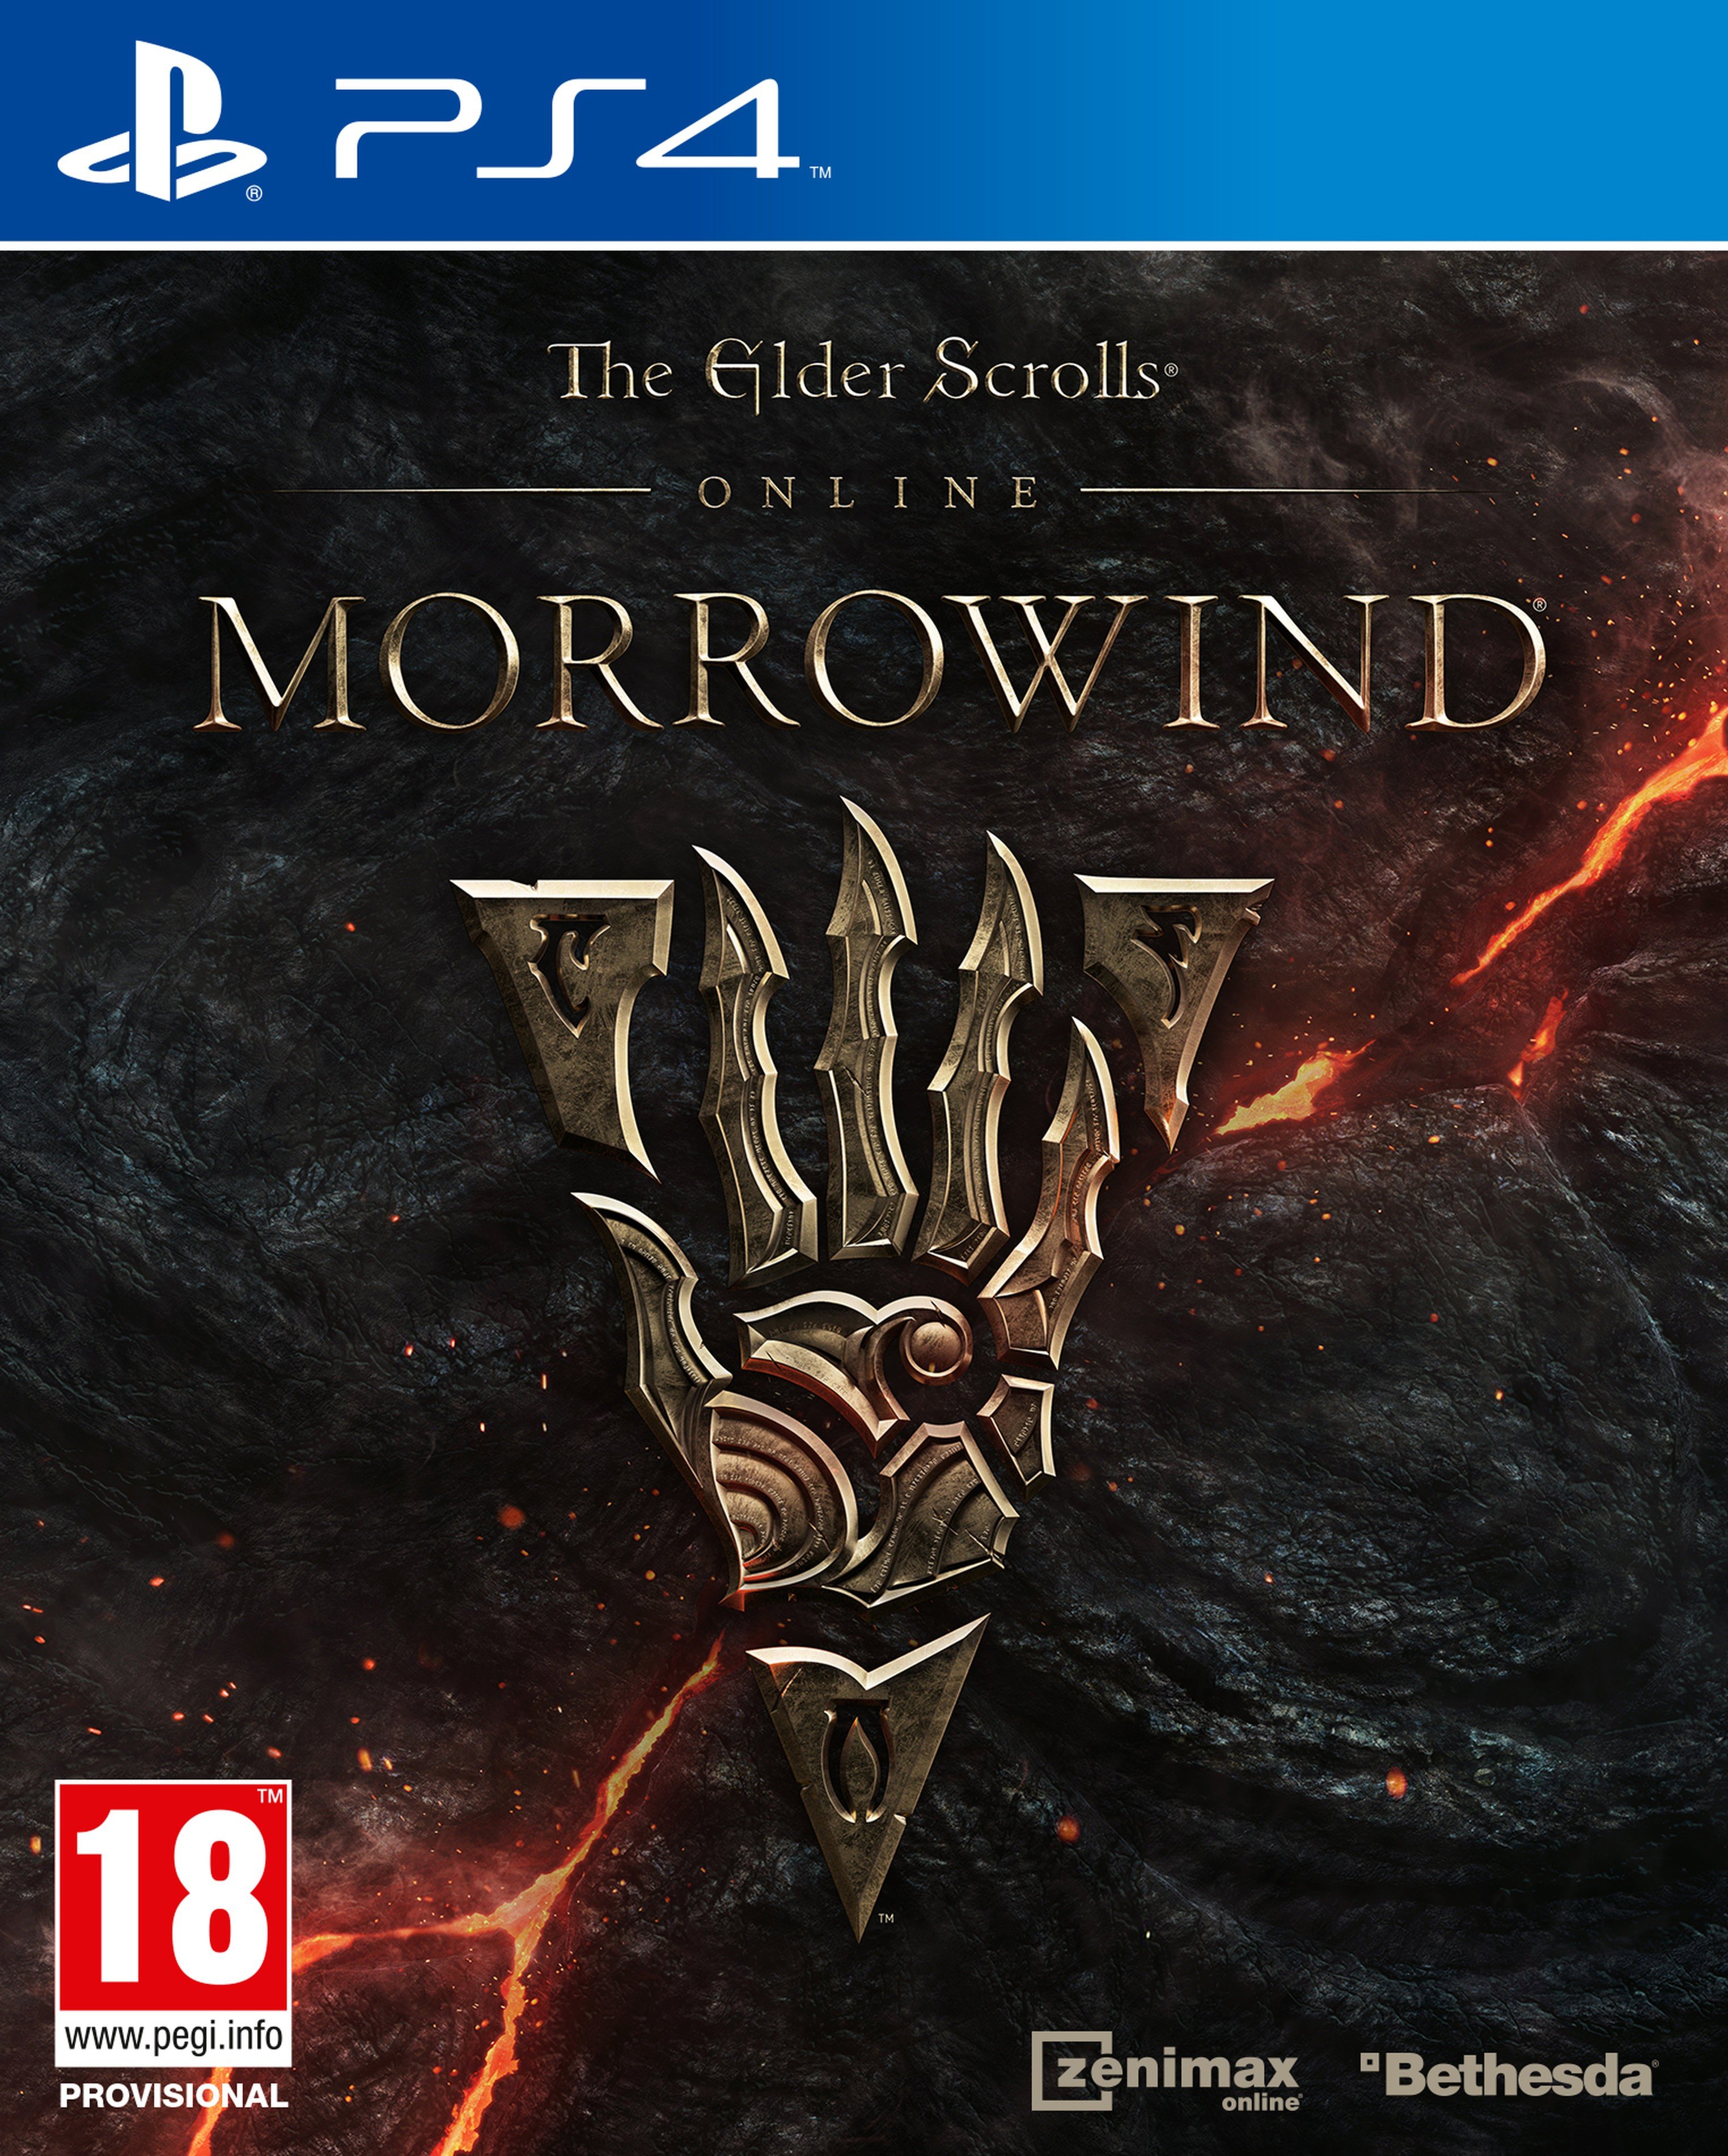 The Elder Scrolls Online download